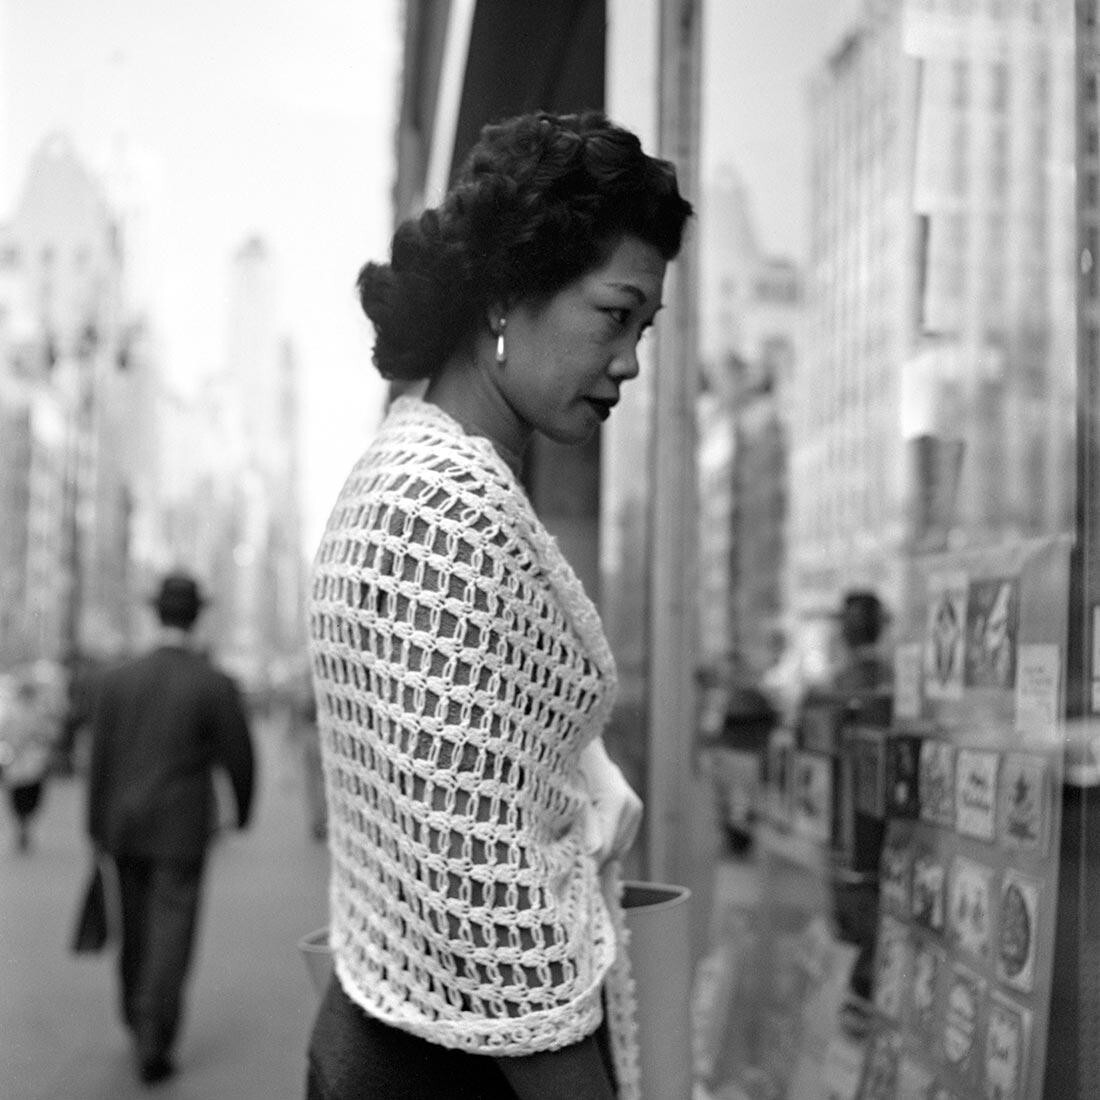 8 октября 1954 г., Нью-Йорк, штат Нью-Йорк. Фотограф Вивиан Майер